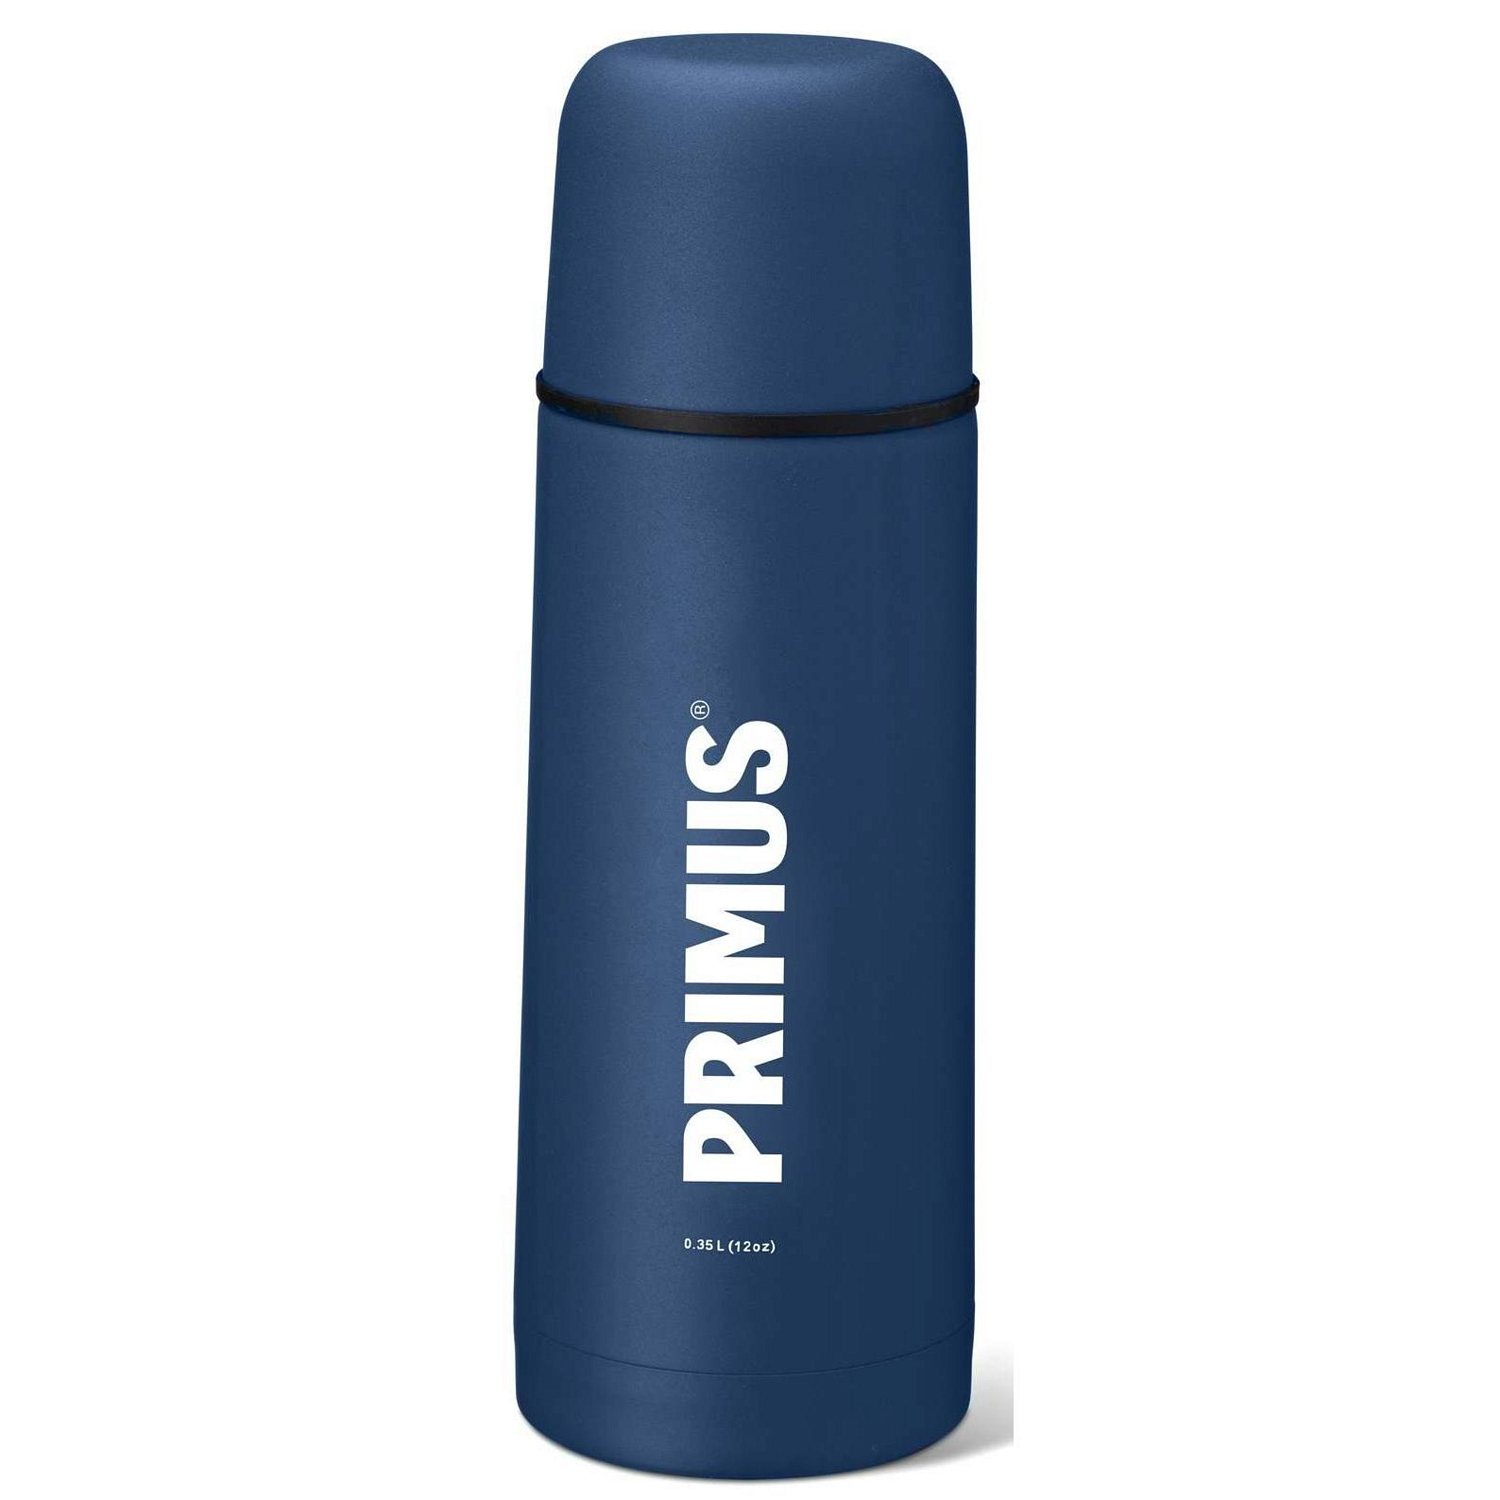 Термос Primus Vacuum bottle 0.5 Deep Blue